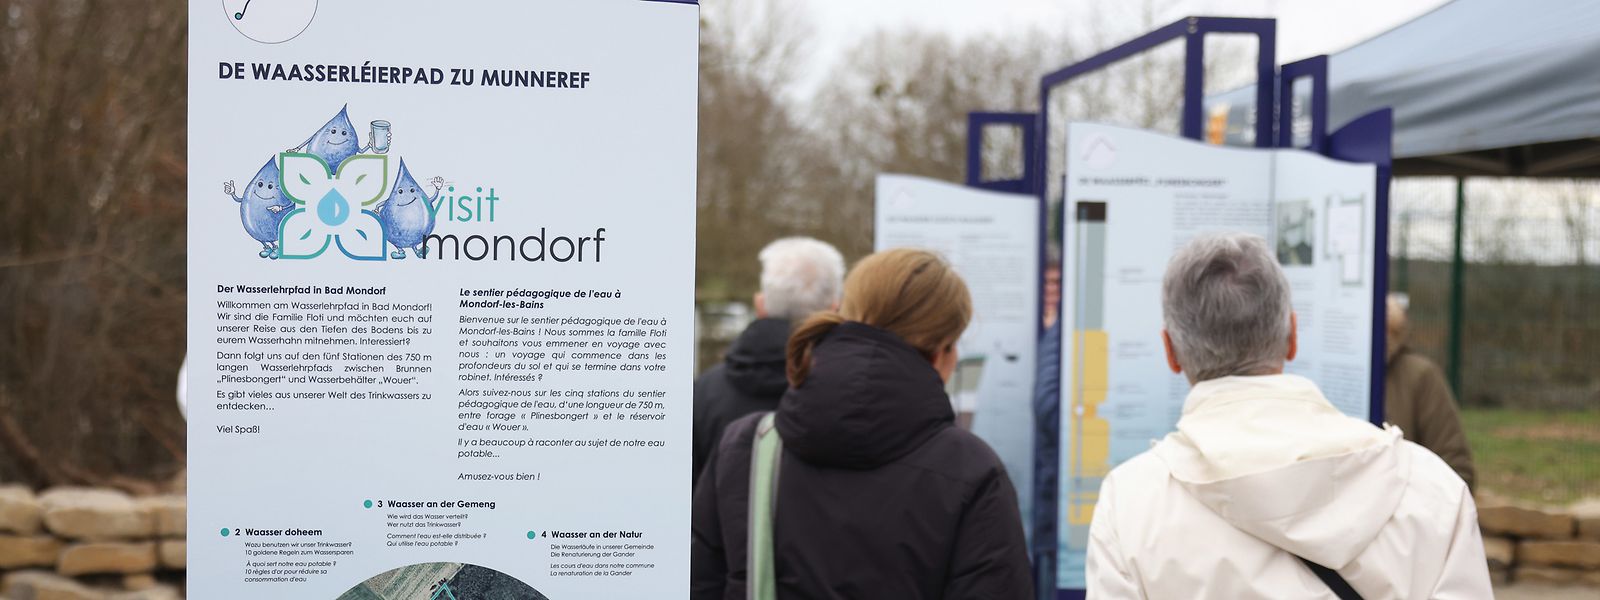 Der neue Lehrpfad von Bad Mondorf führt auf 750 Metern vom Wasserbehälter am Wouerbësch zum neuen Brunnen Plinesbongert. 